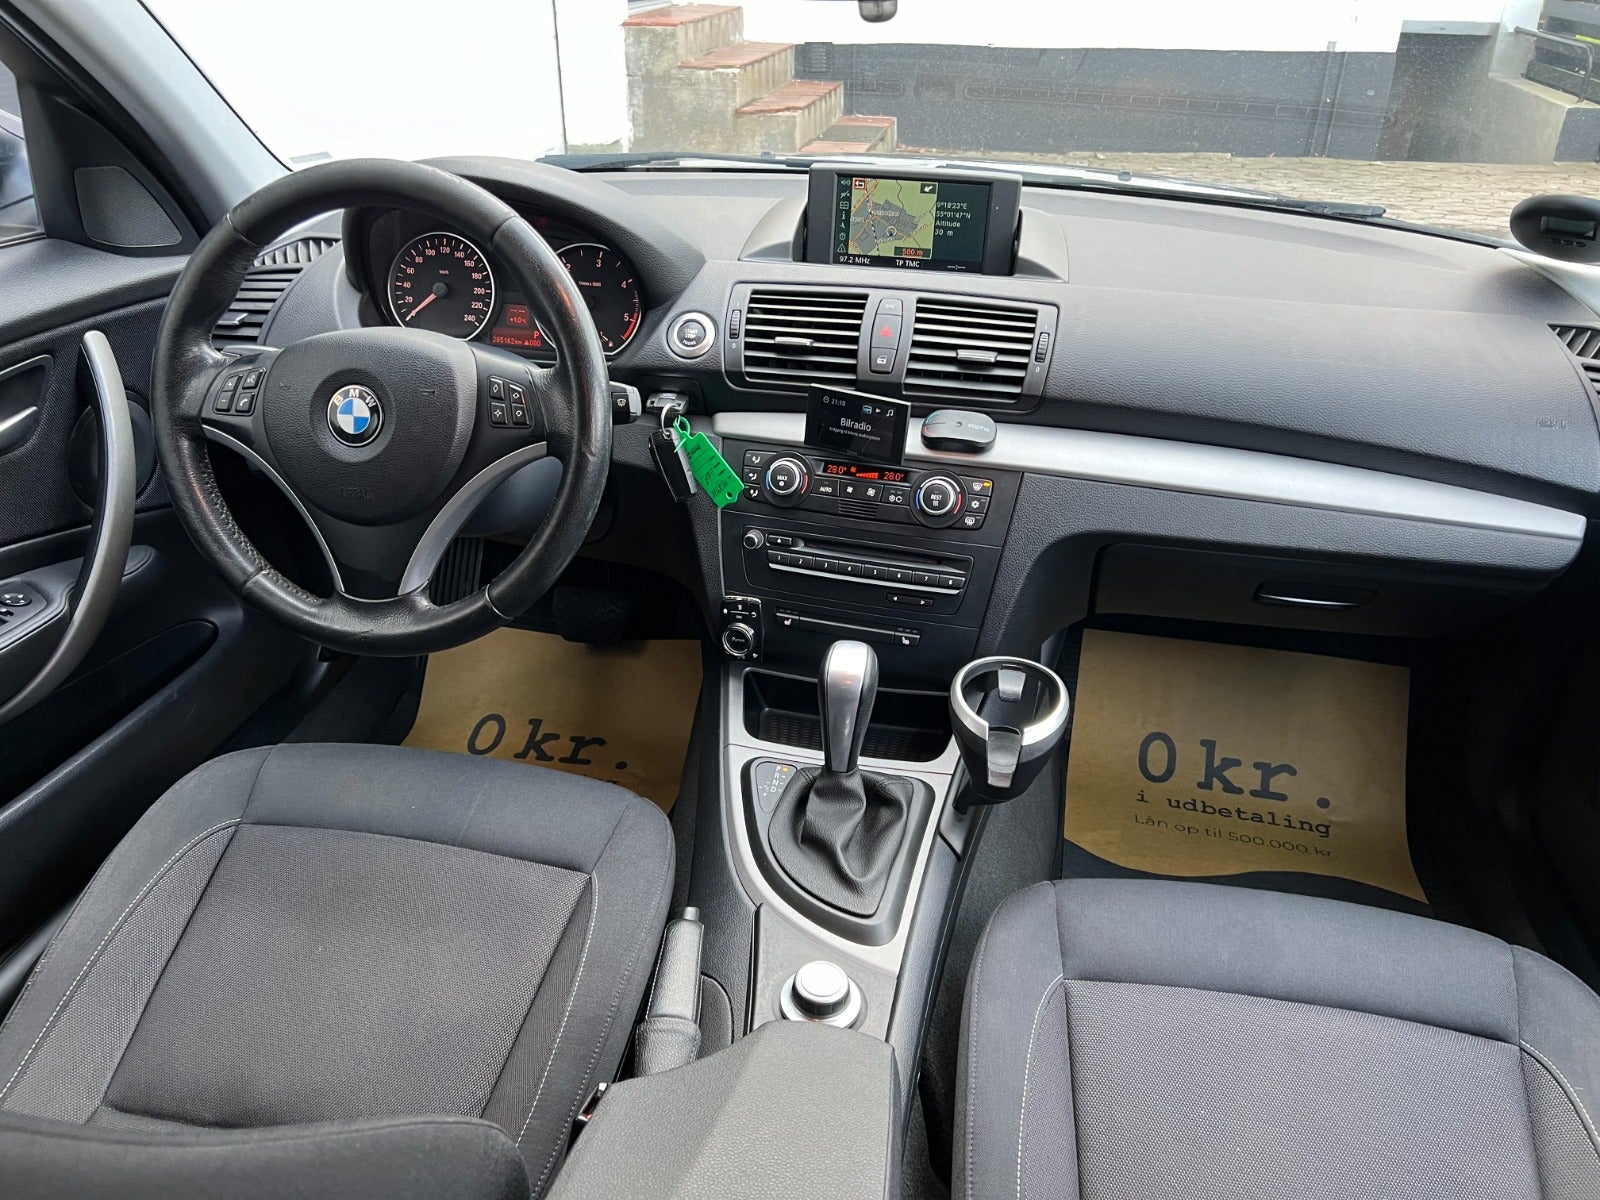 BMW 118d 2,0 aut. Diesel aut. Automatgear modelår 2007 km